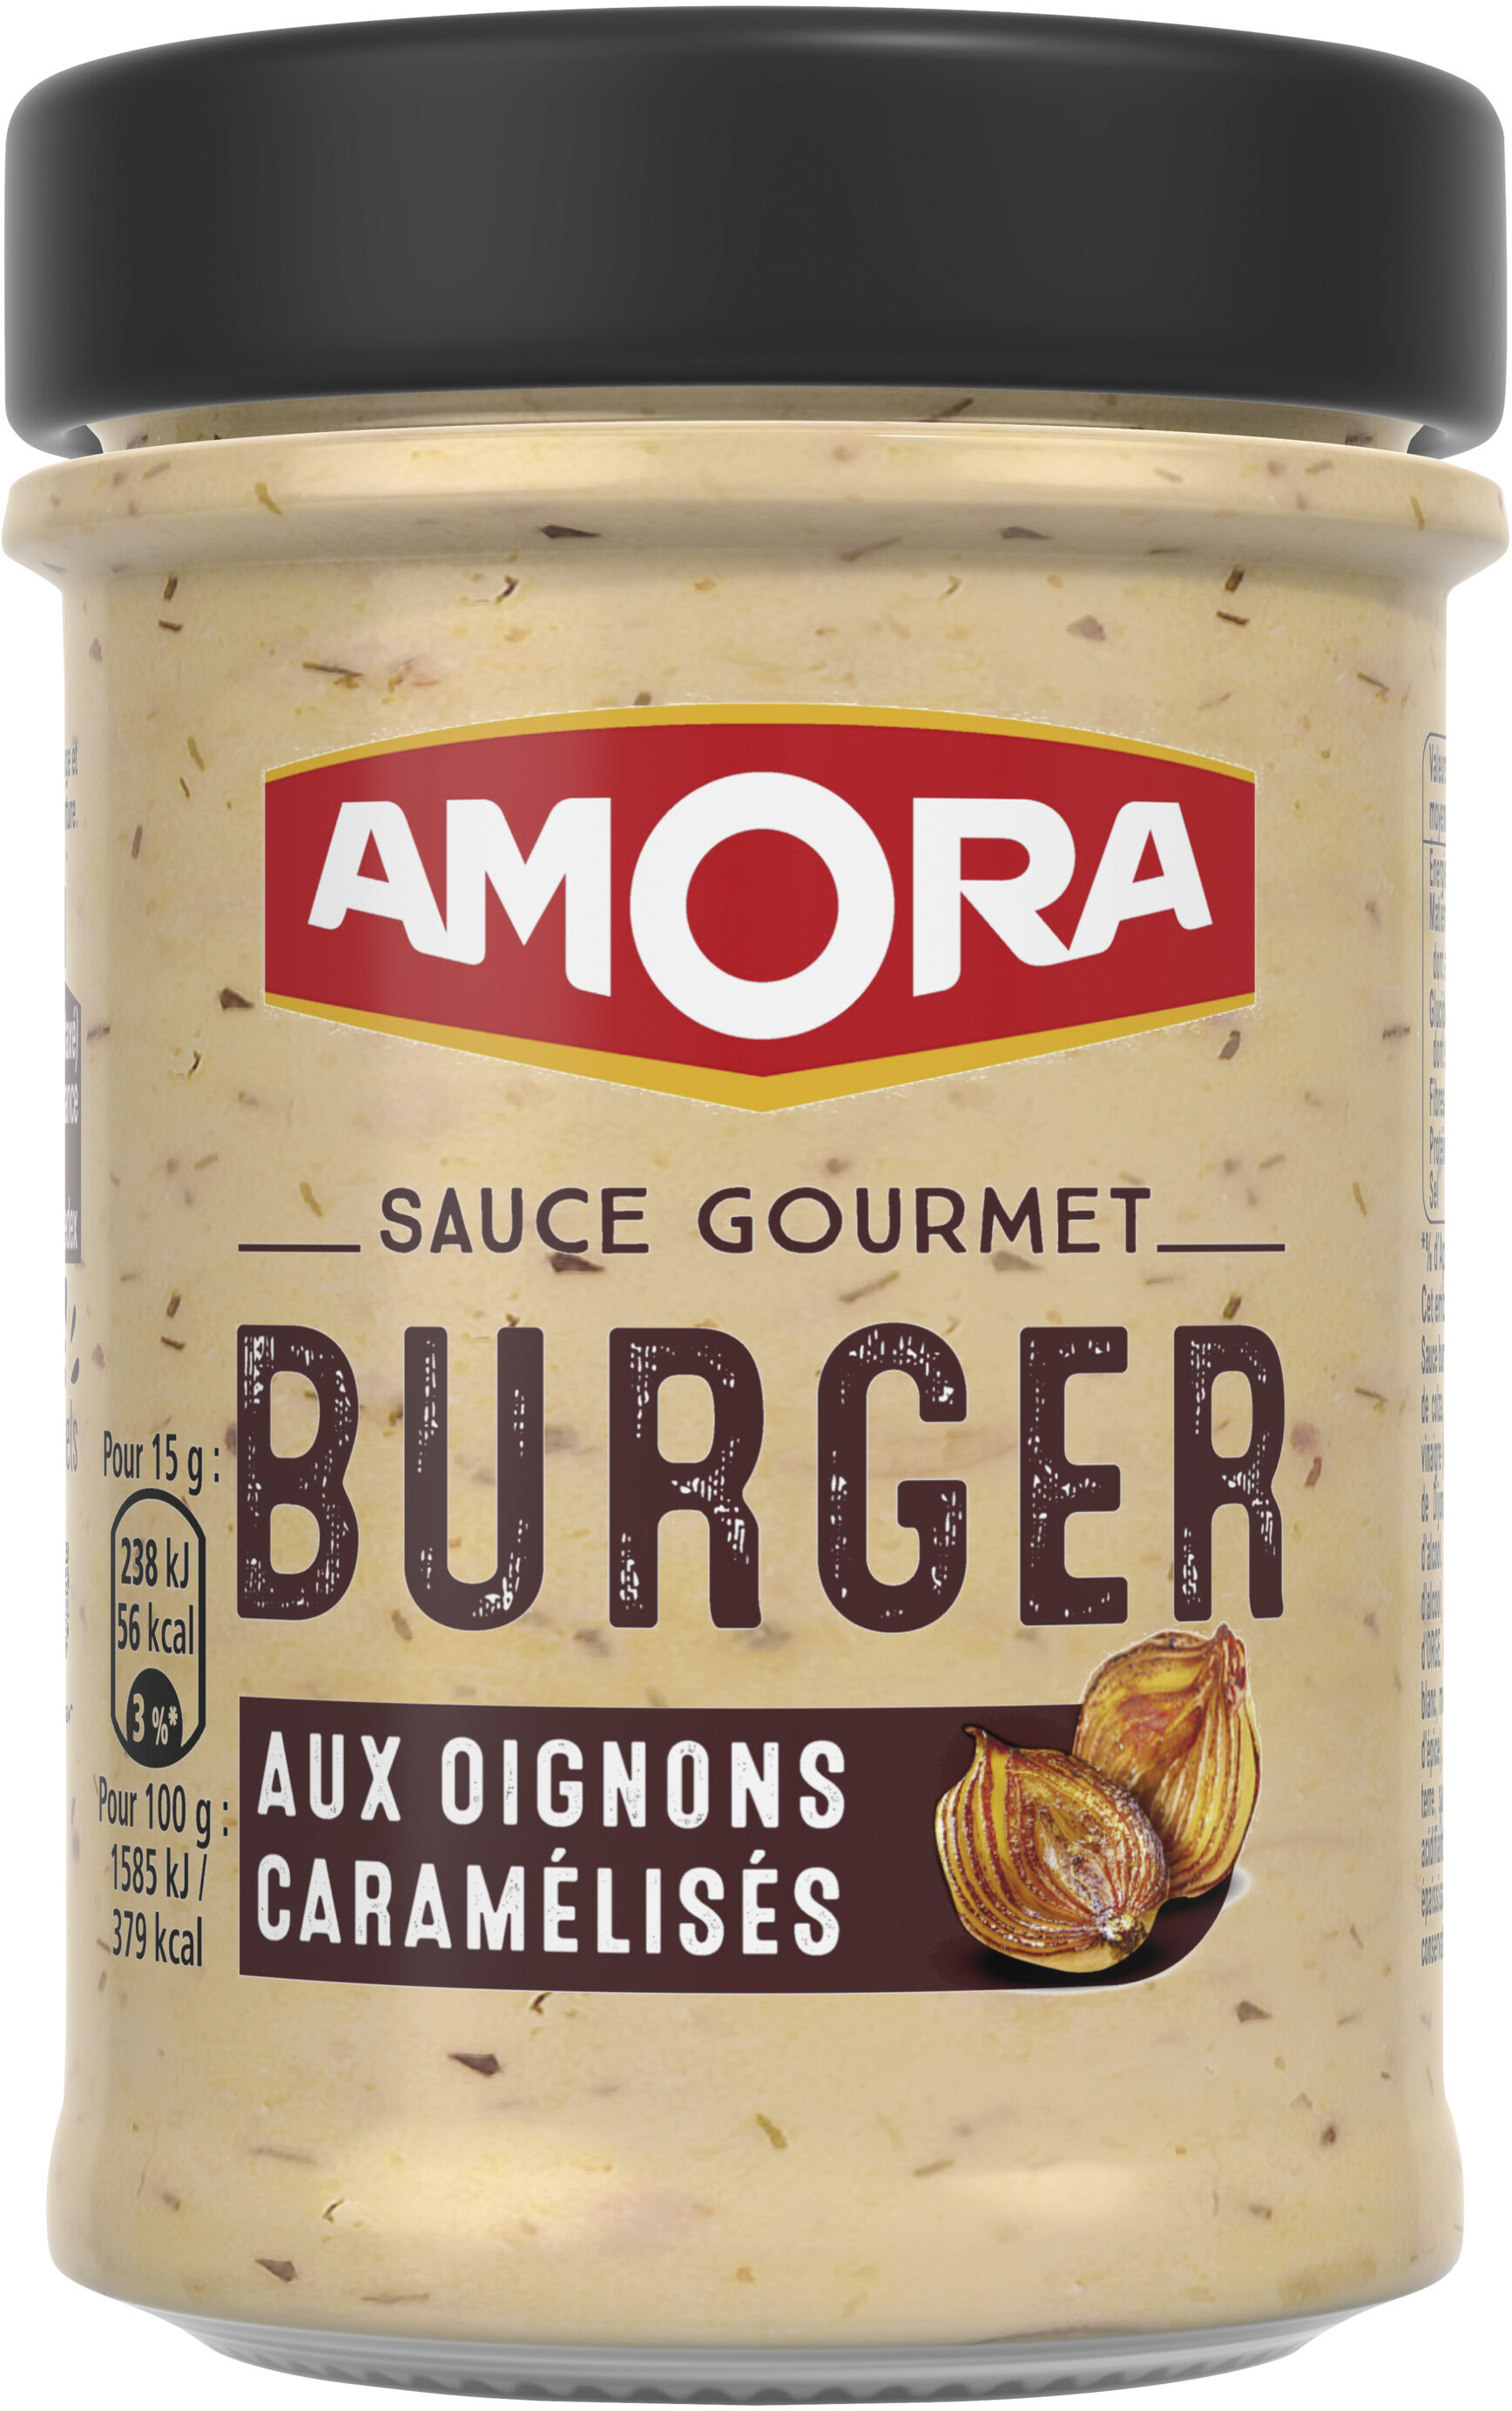 Amora Sauce Gourmet Burger aux Oignons Caramélisés 188g - Product - fr